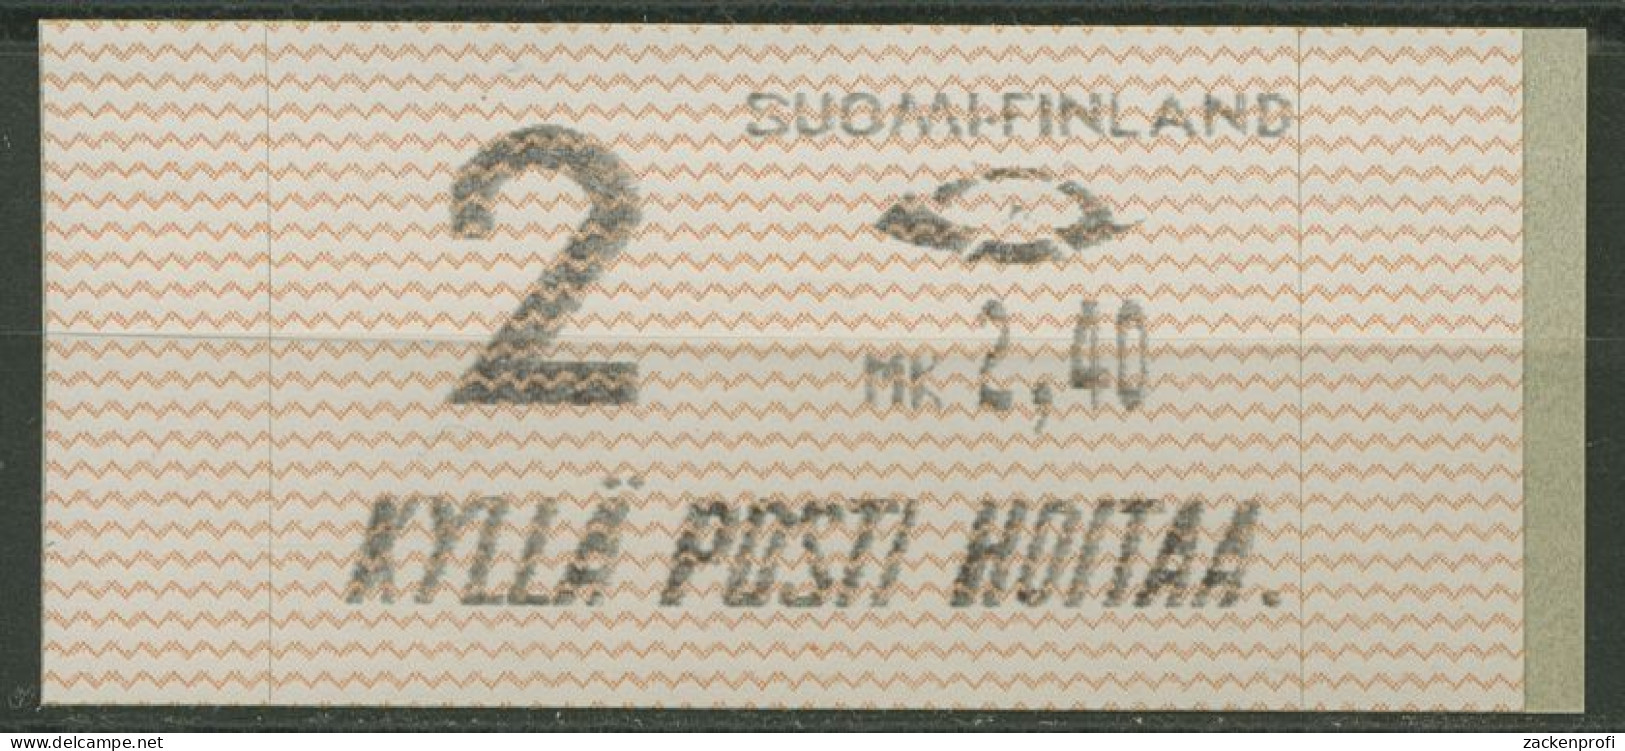 Finnland Automatenmarken 1991 MK 2,40 Einzelwert, ATM 10.1 Z2 Postfrisch - Vignette [ATM]